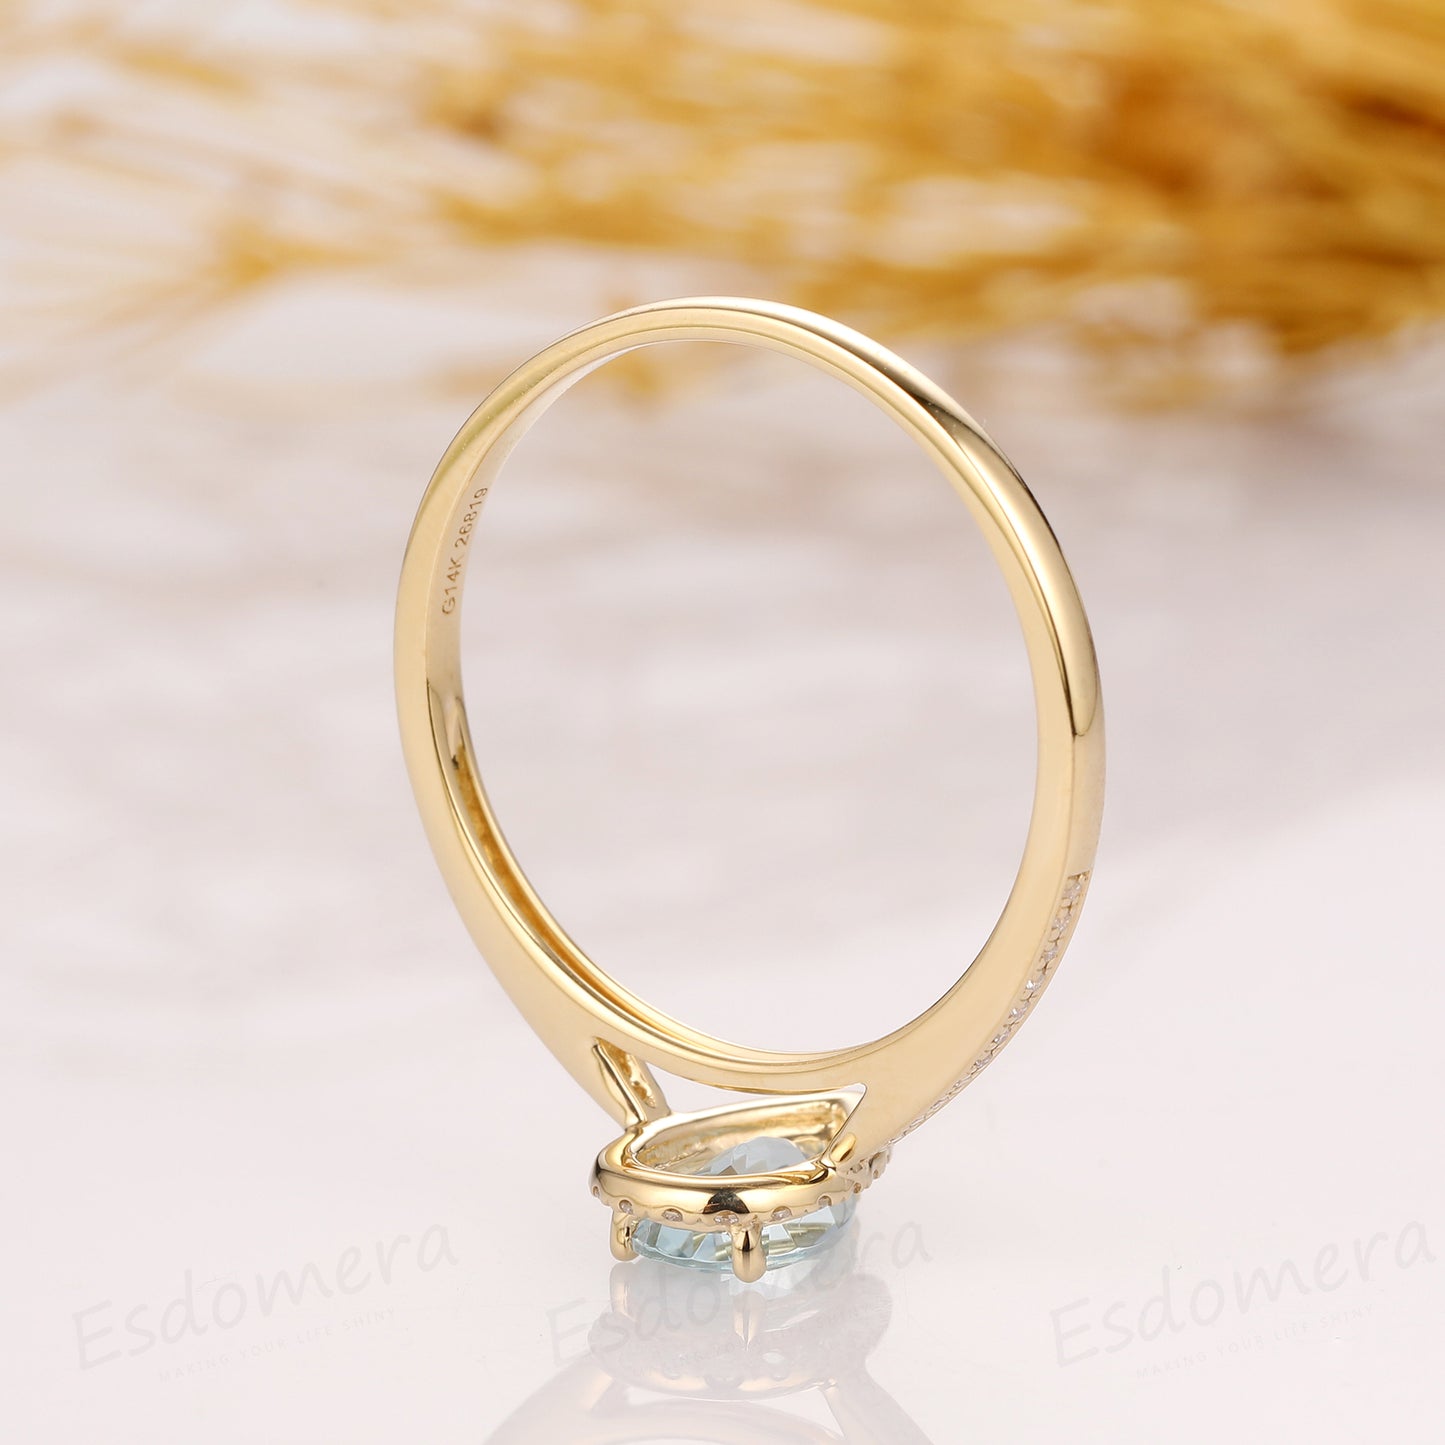 Pear Cut Aquamarine Ring, Drop Shape 5x8mm Aquamarine Wedding Ring, 14k Yellow Gold Ring